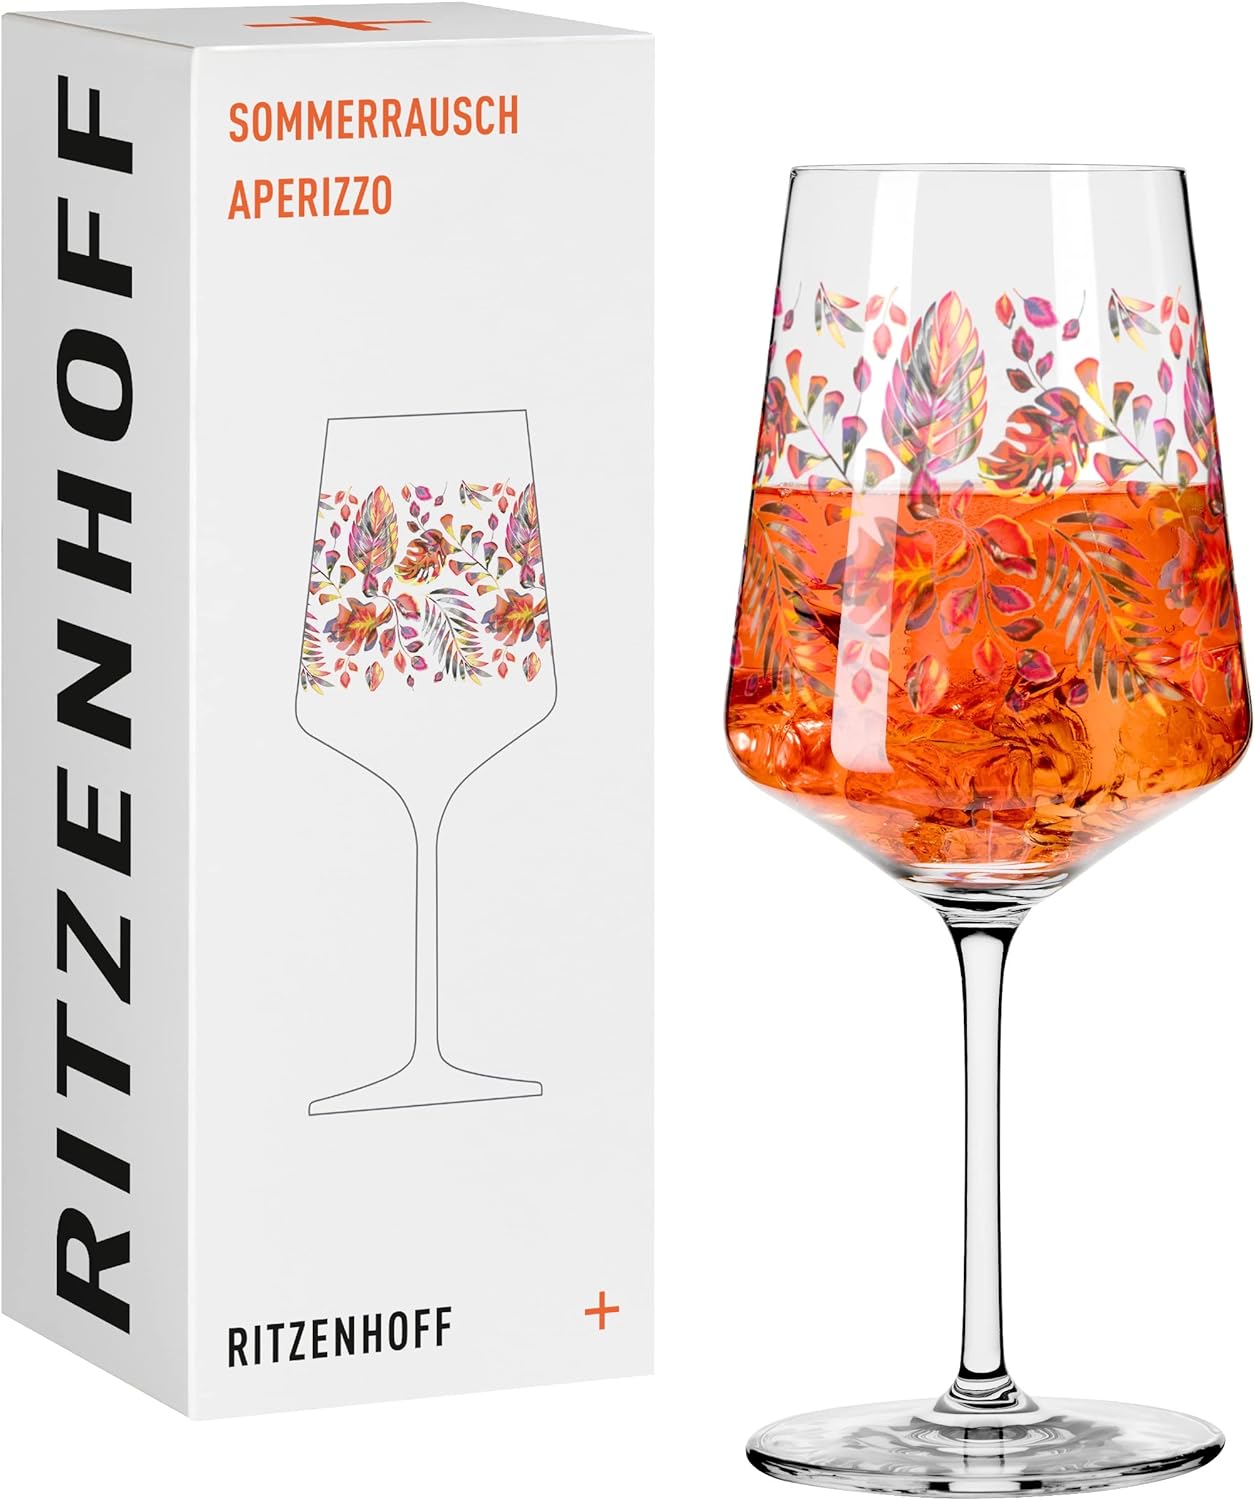 Ritzenhoff Summer Rush Aperizzo Glass